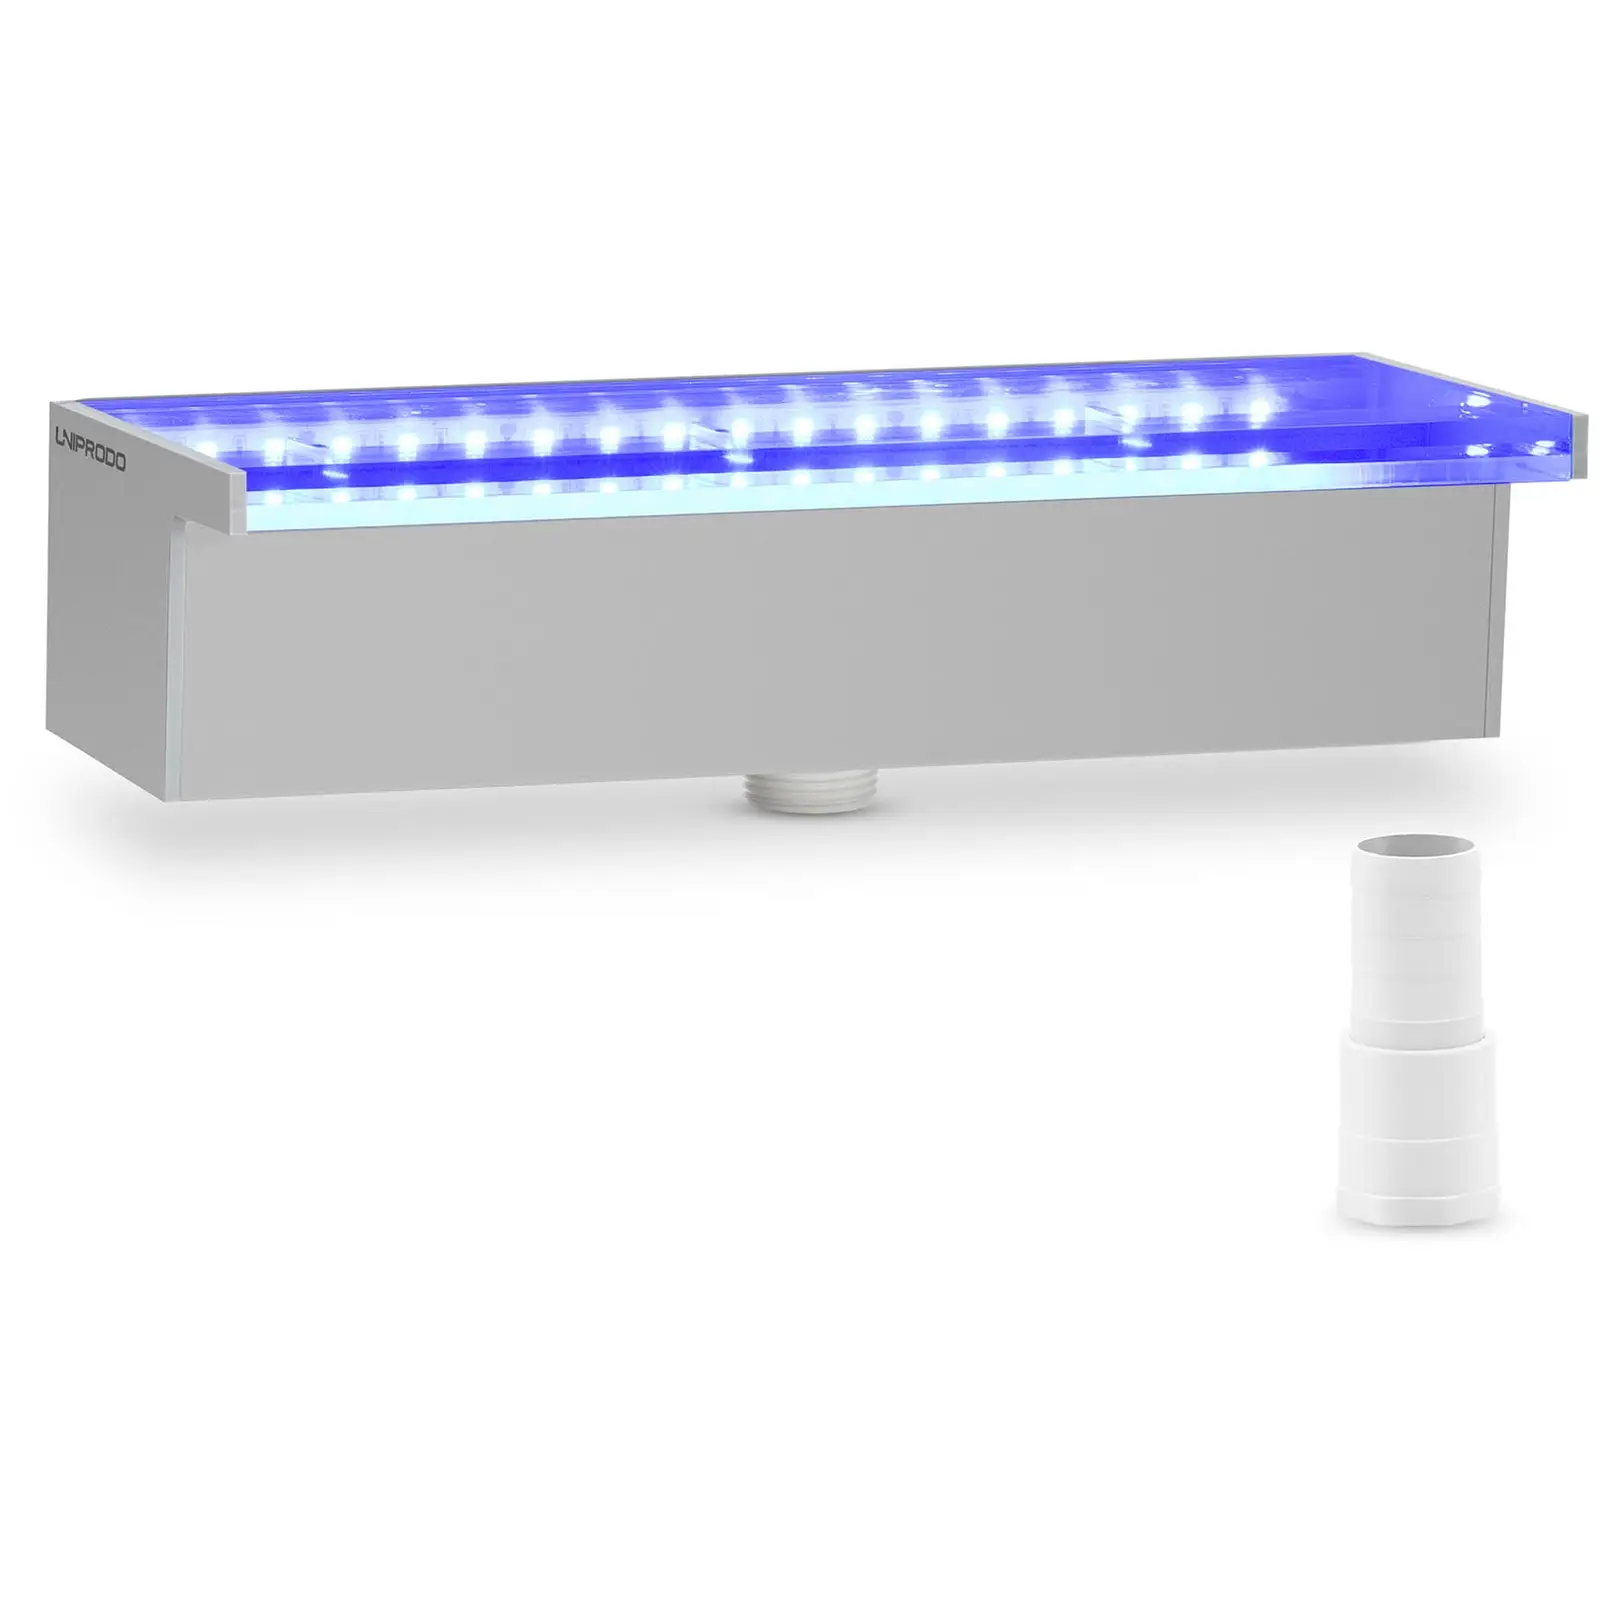 Medence szökőkút - 30 cm - LED világítás - kék/fehér - 30 mm-es vízkivezető nyílás